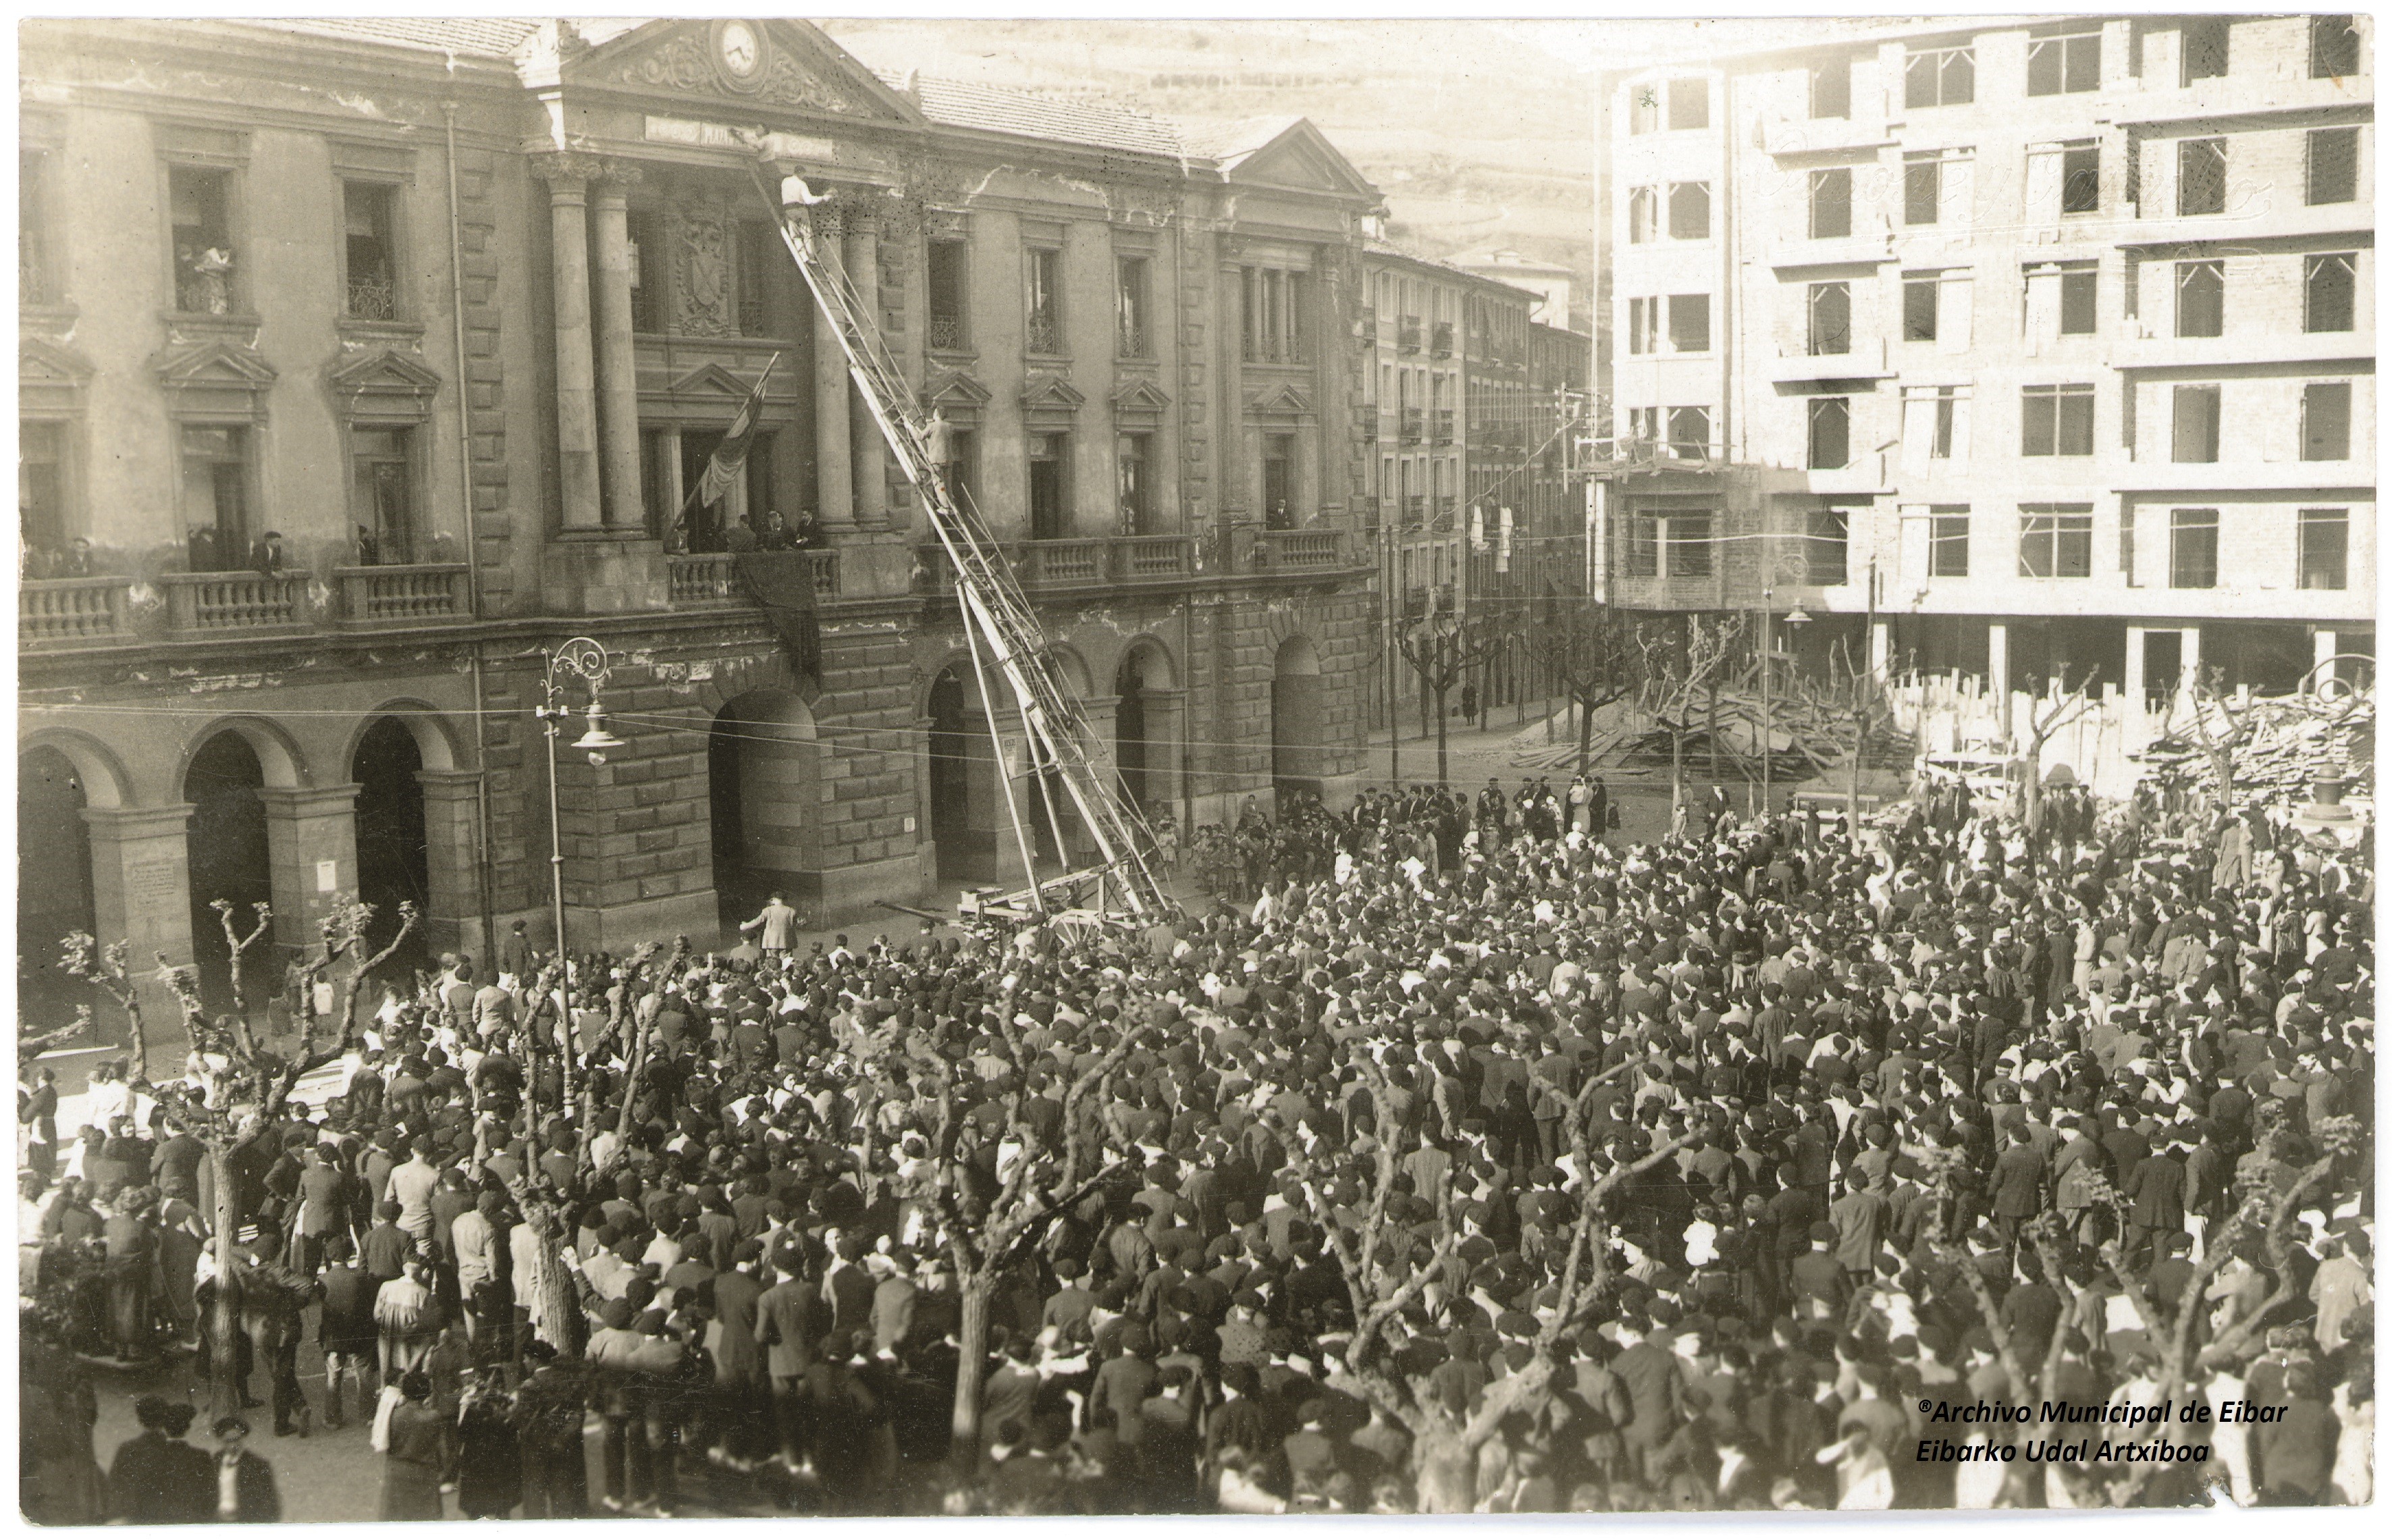 El Ayuntamiento de Eibar organiza diversas actividades, con motivo del 90º aniversario de la proclamación de la II República